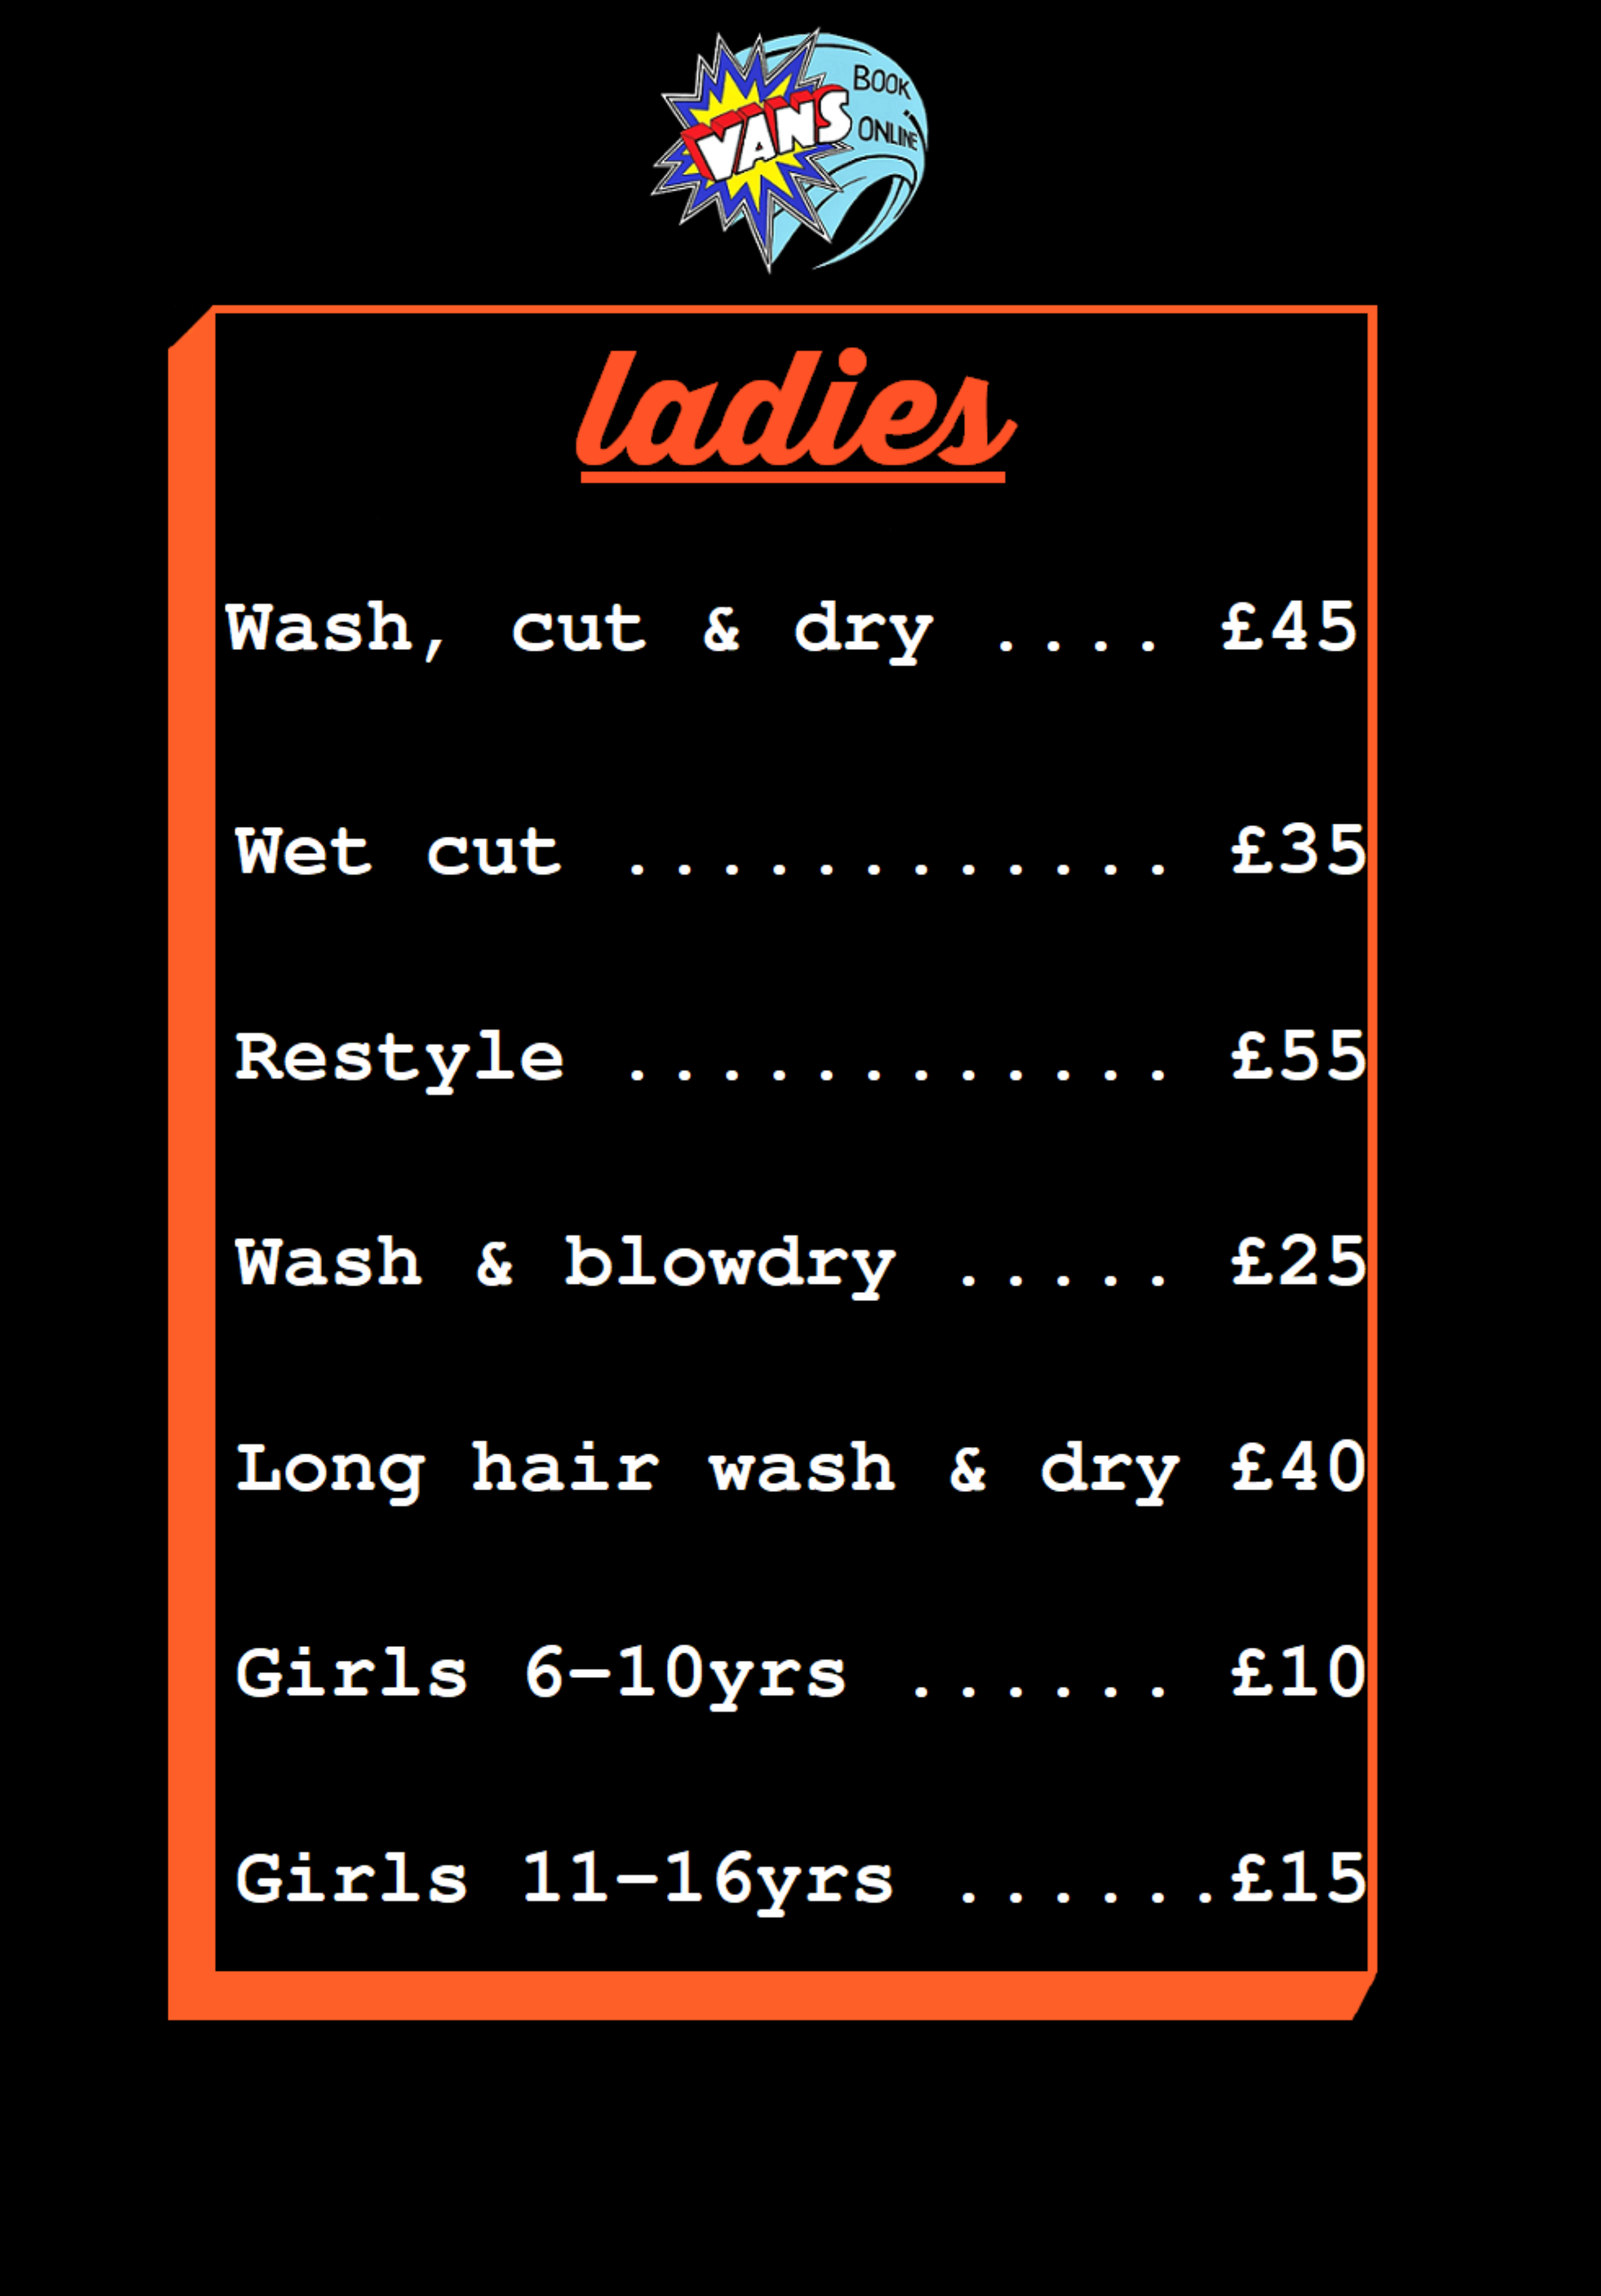 vans hairdressing canterbury ladies pricing